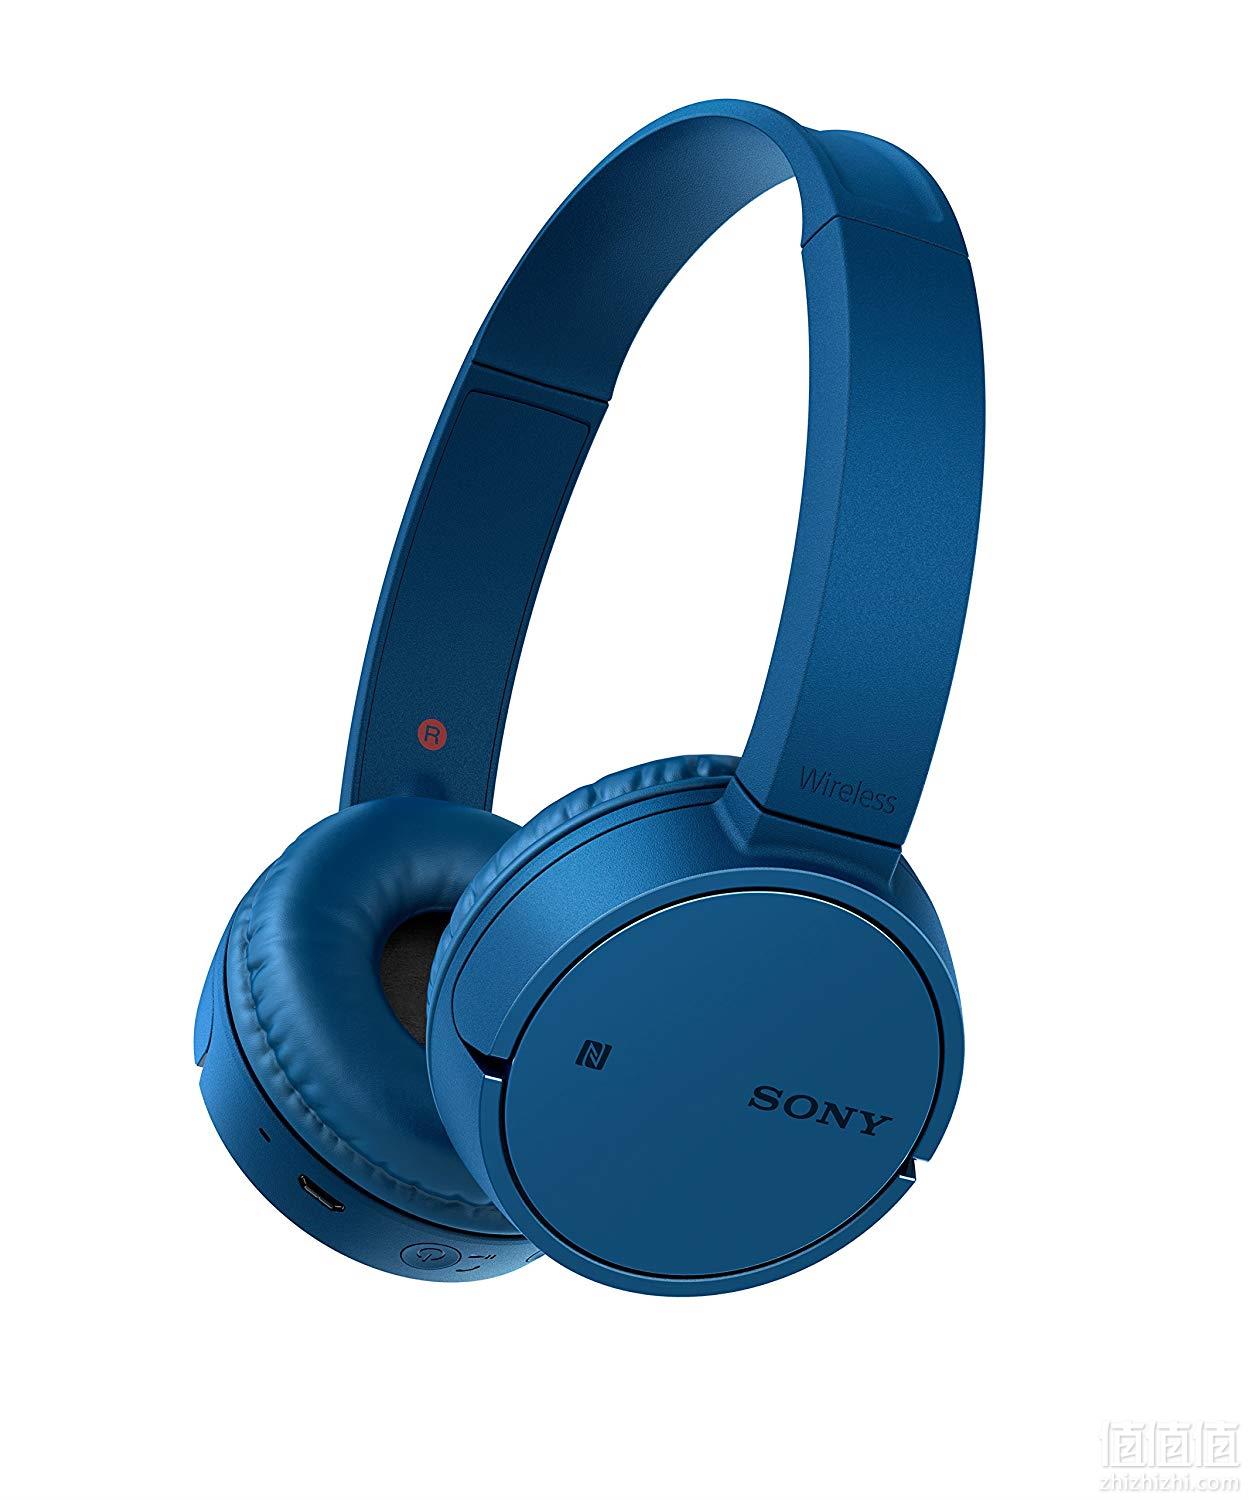 primeday特价sony索尼whch500无线蓝牙耳机蓝色灰色